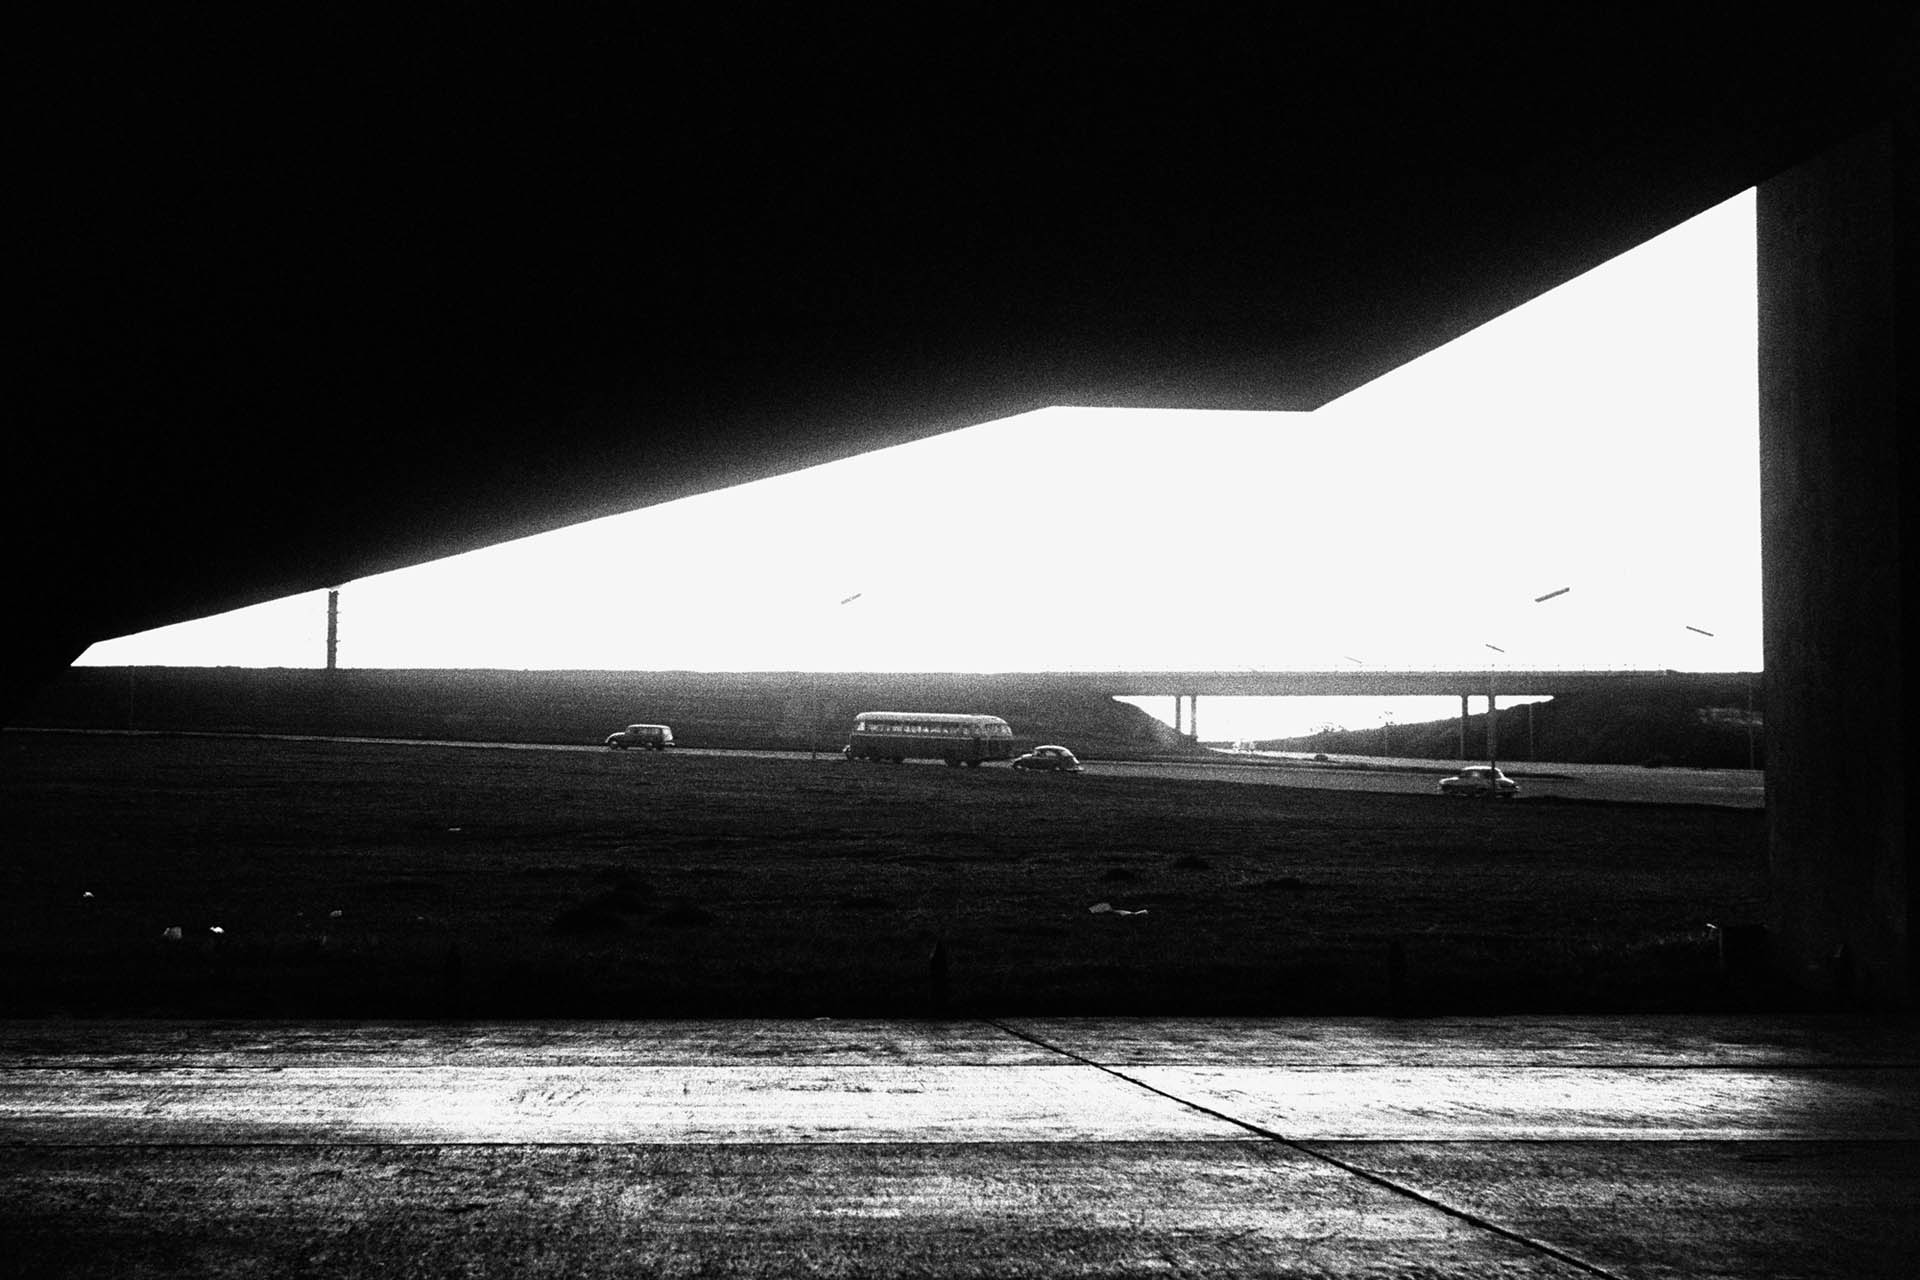 Rodoviária vista da janela de carro em movimento, Brasília, DF, 1964. Foto de Jorge Bodanzky. Acervo Jorge Bodanzky / IMS